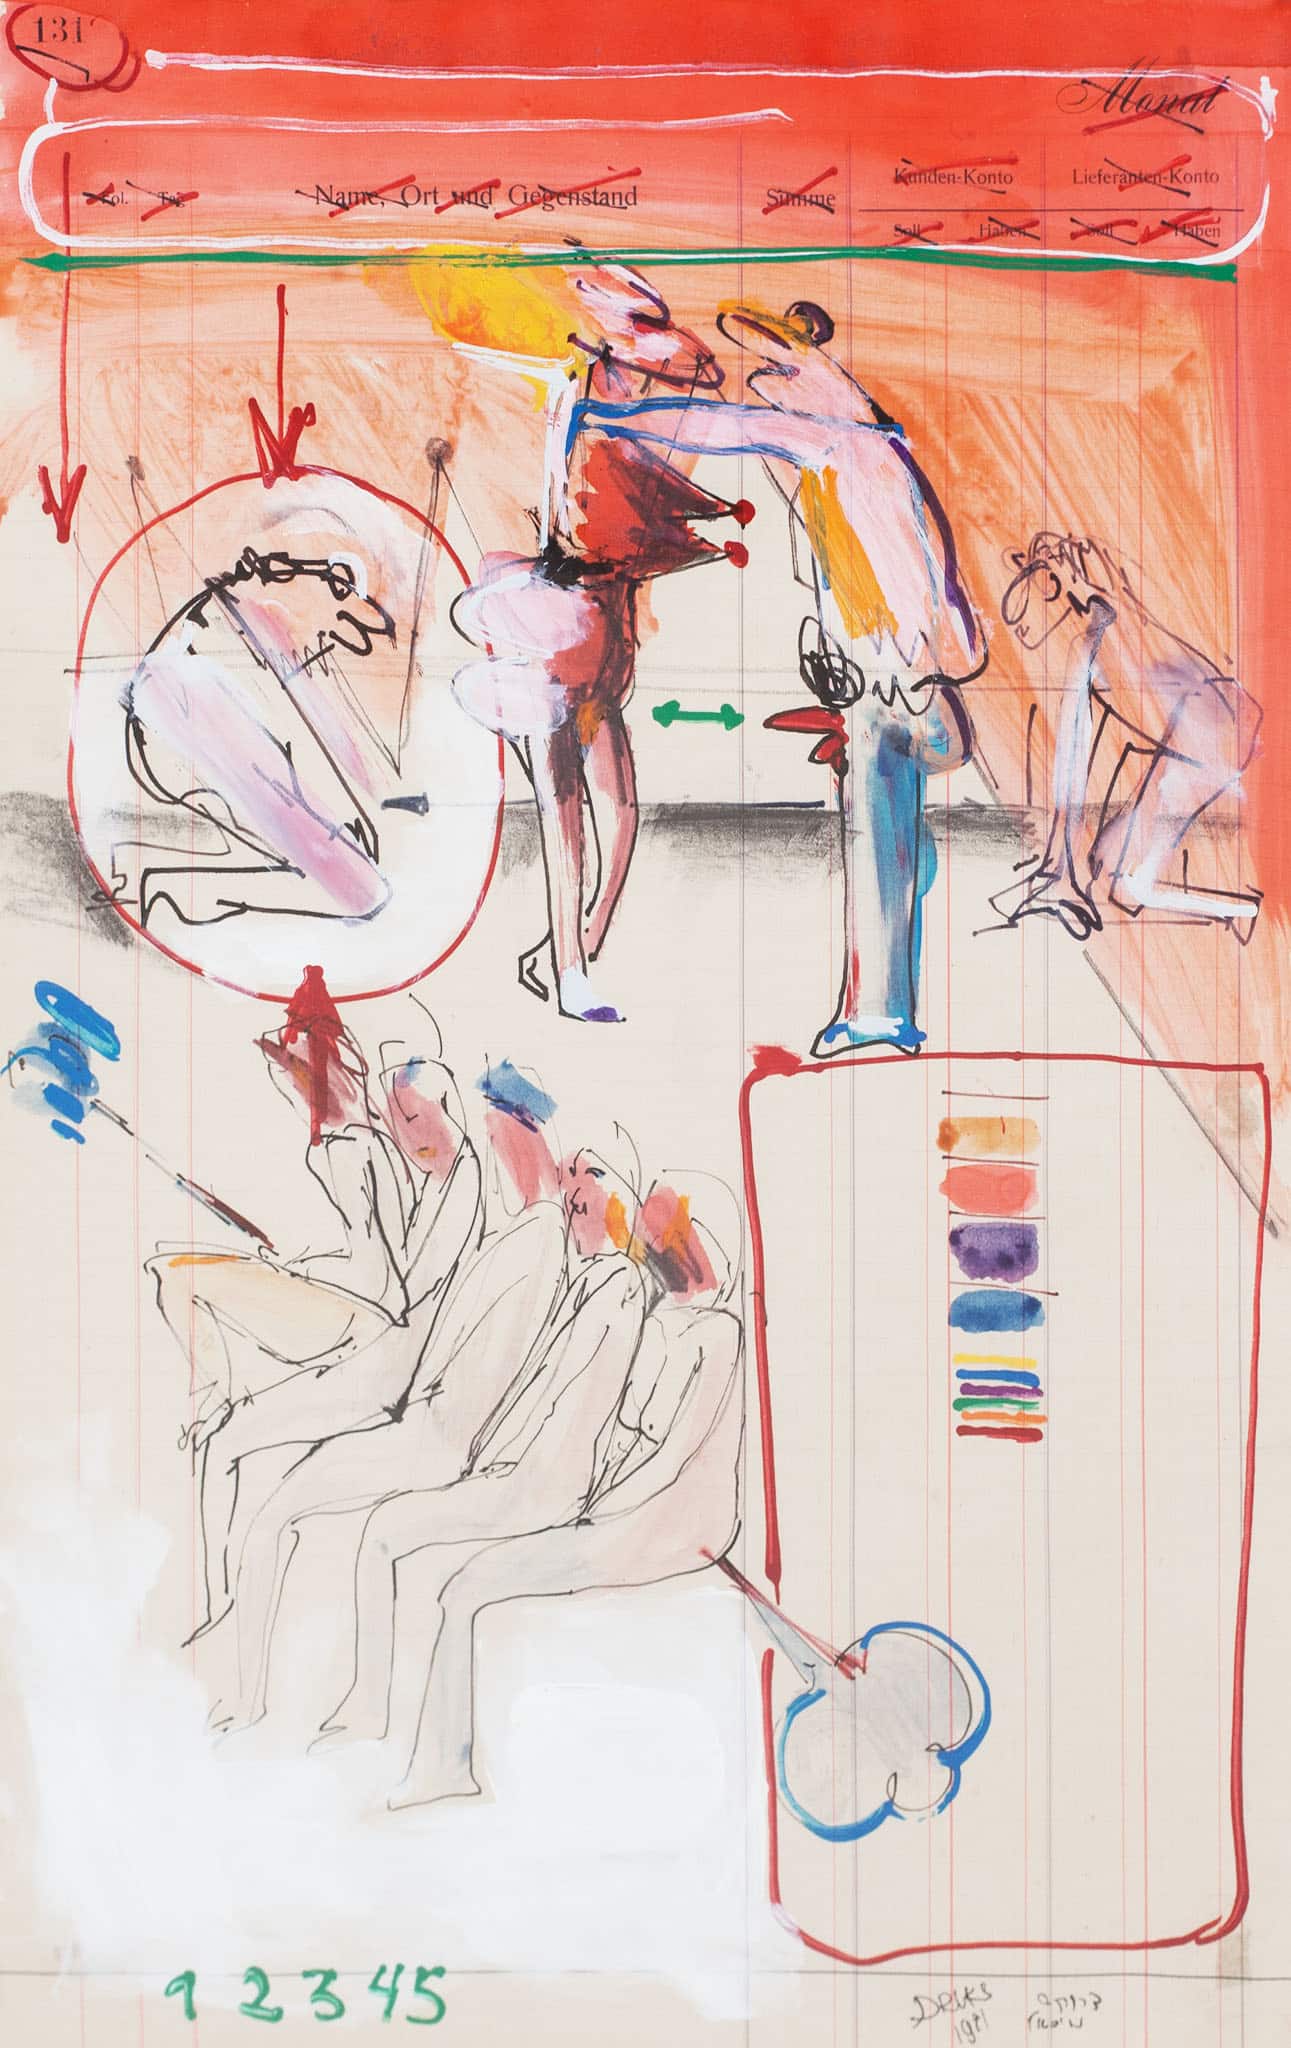 מיכאל דרוקס, "ללא כותרת", 1971, טכניקה מעורבת על נייר, 29x46 ס"מ